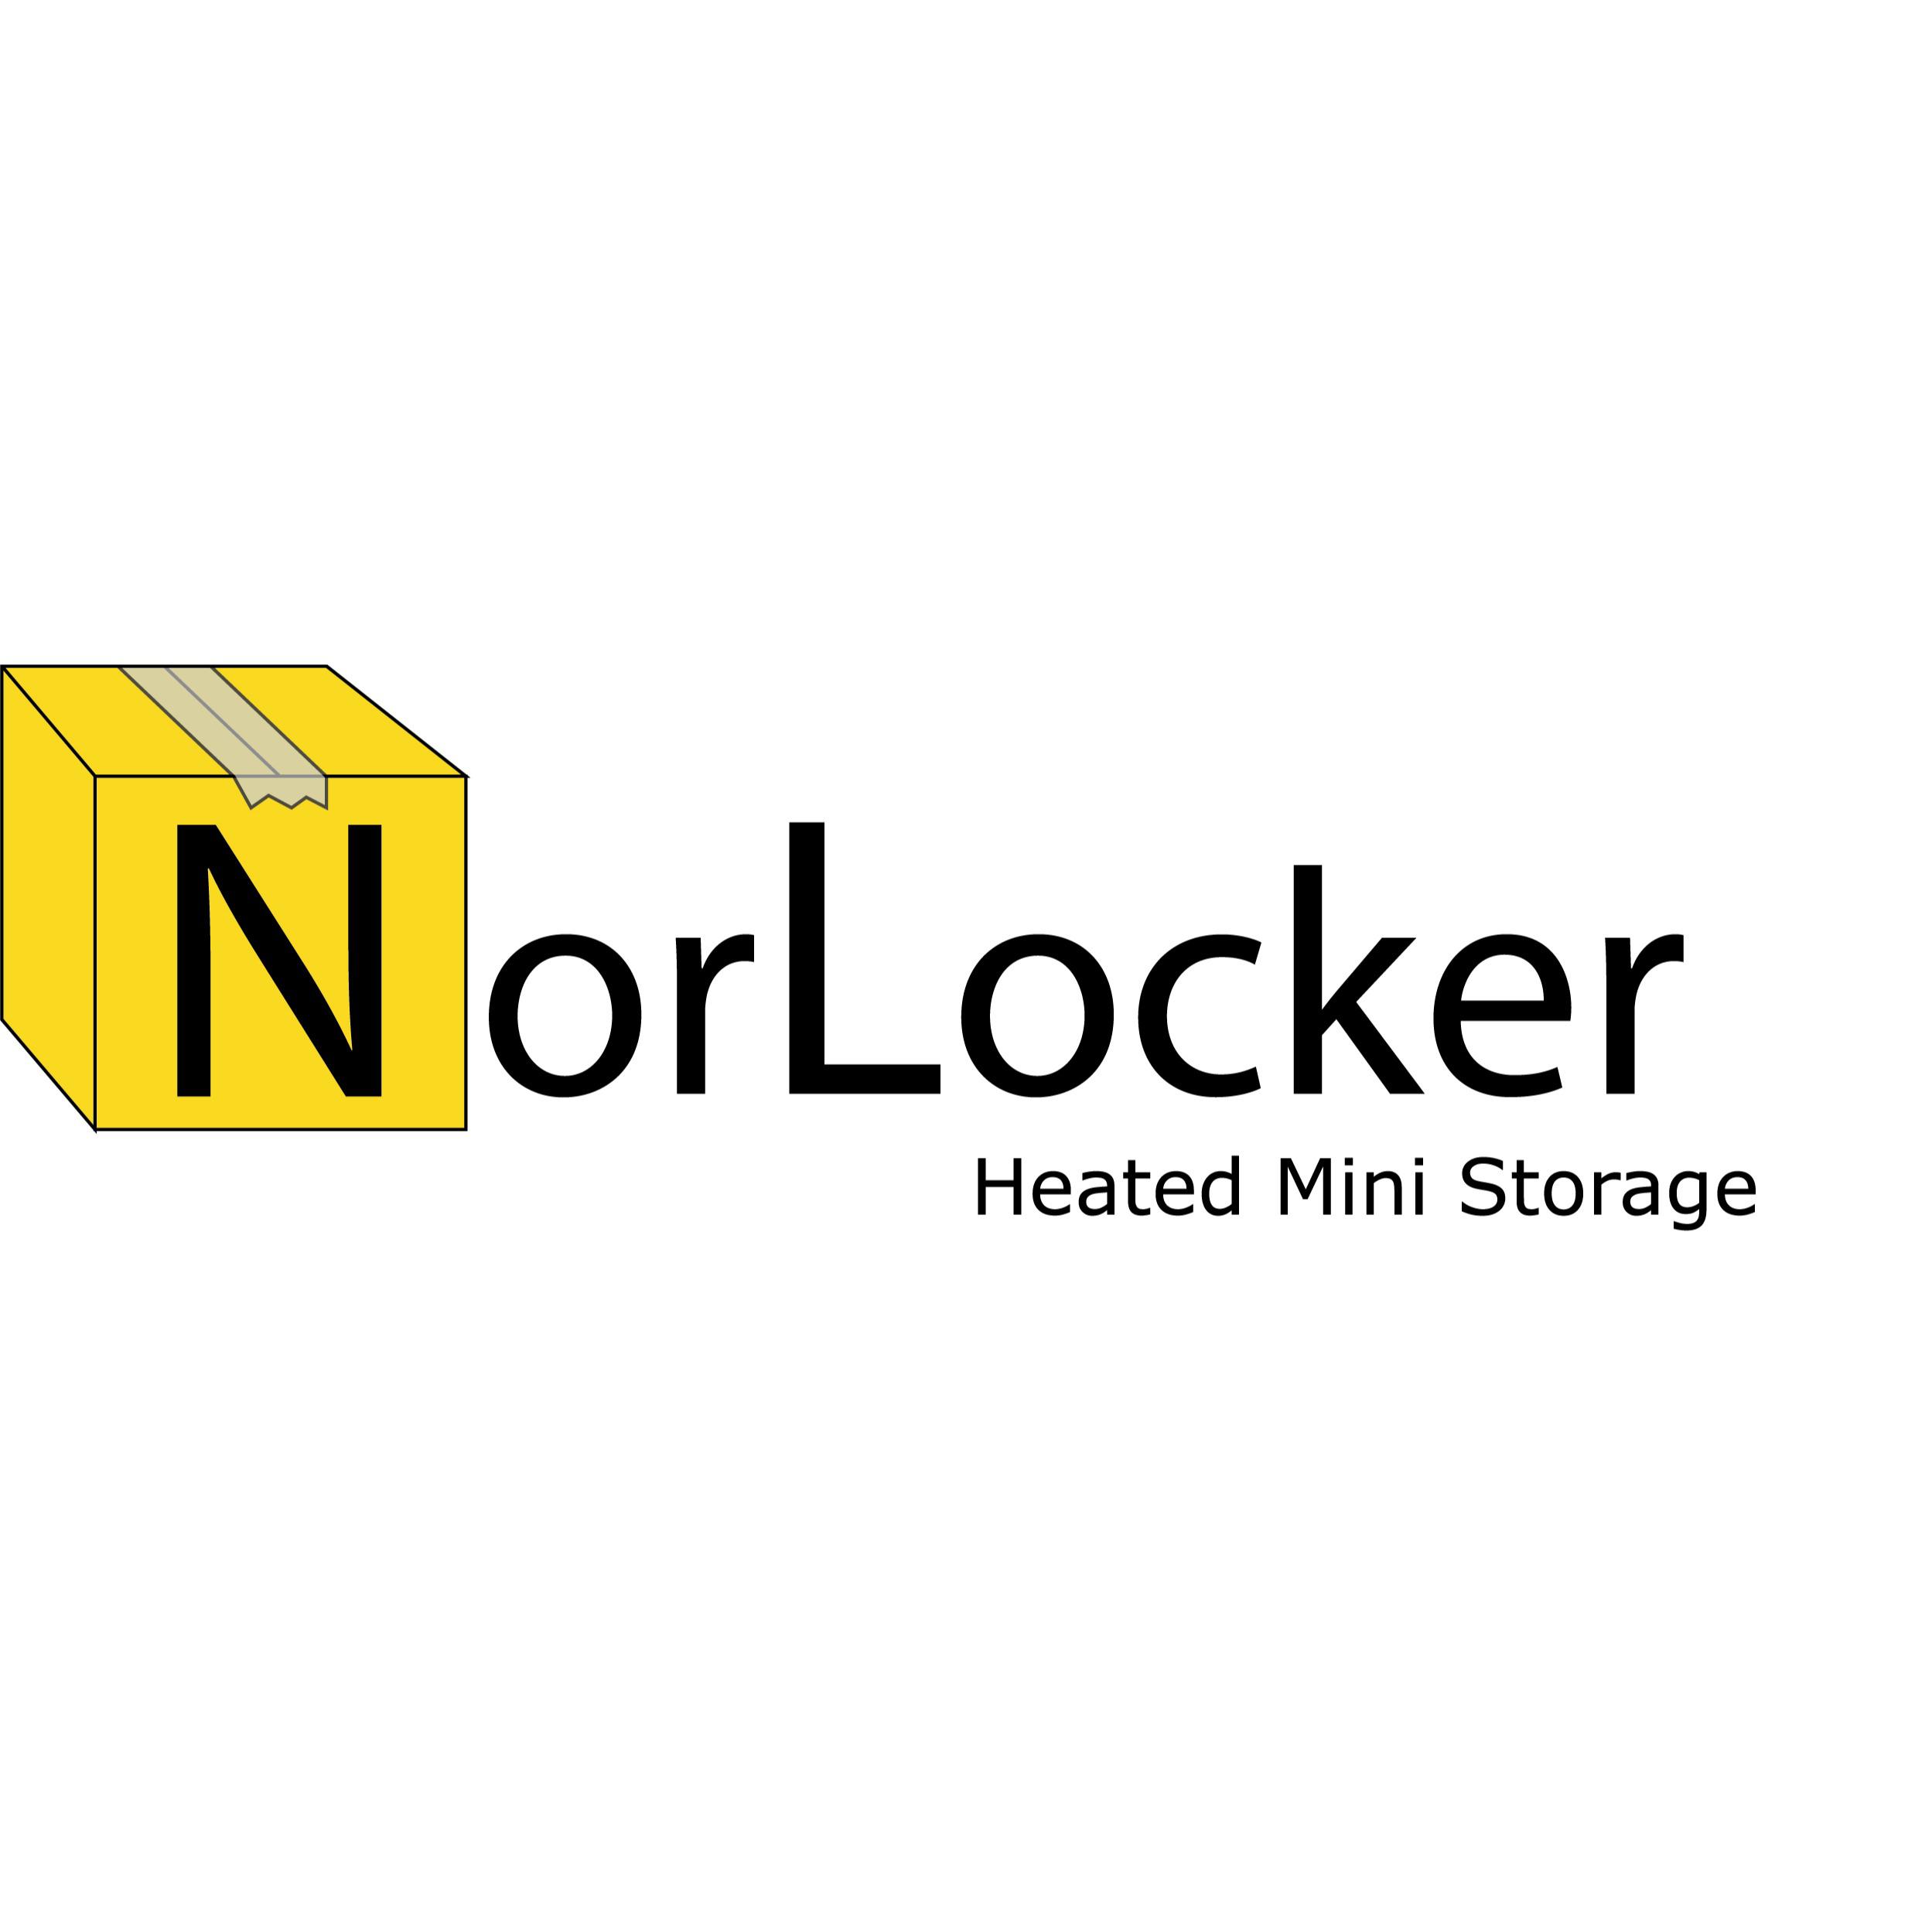 NorLocker Heated Mini Storage Ltd.